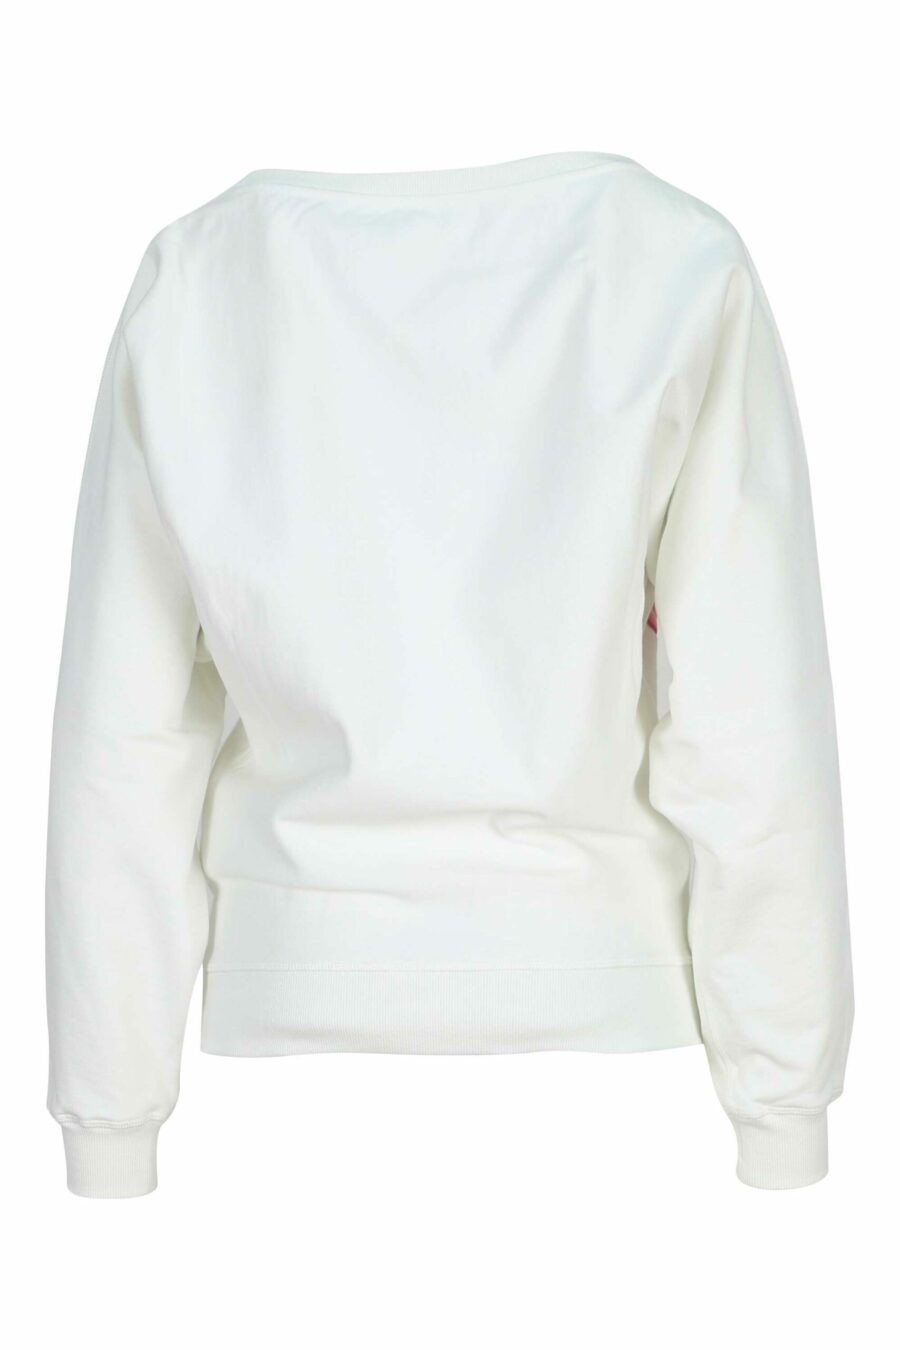 Weißes Sweatshirt mit "kenzo rose" Maxilogo an der Seite - 3612230632318 1 skaliert